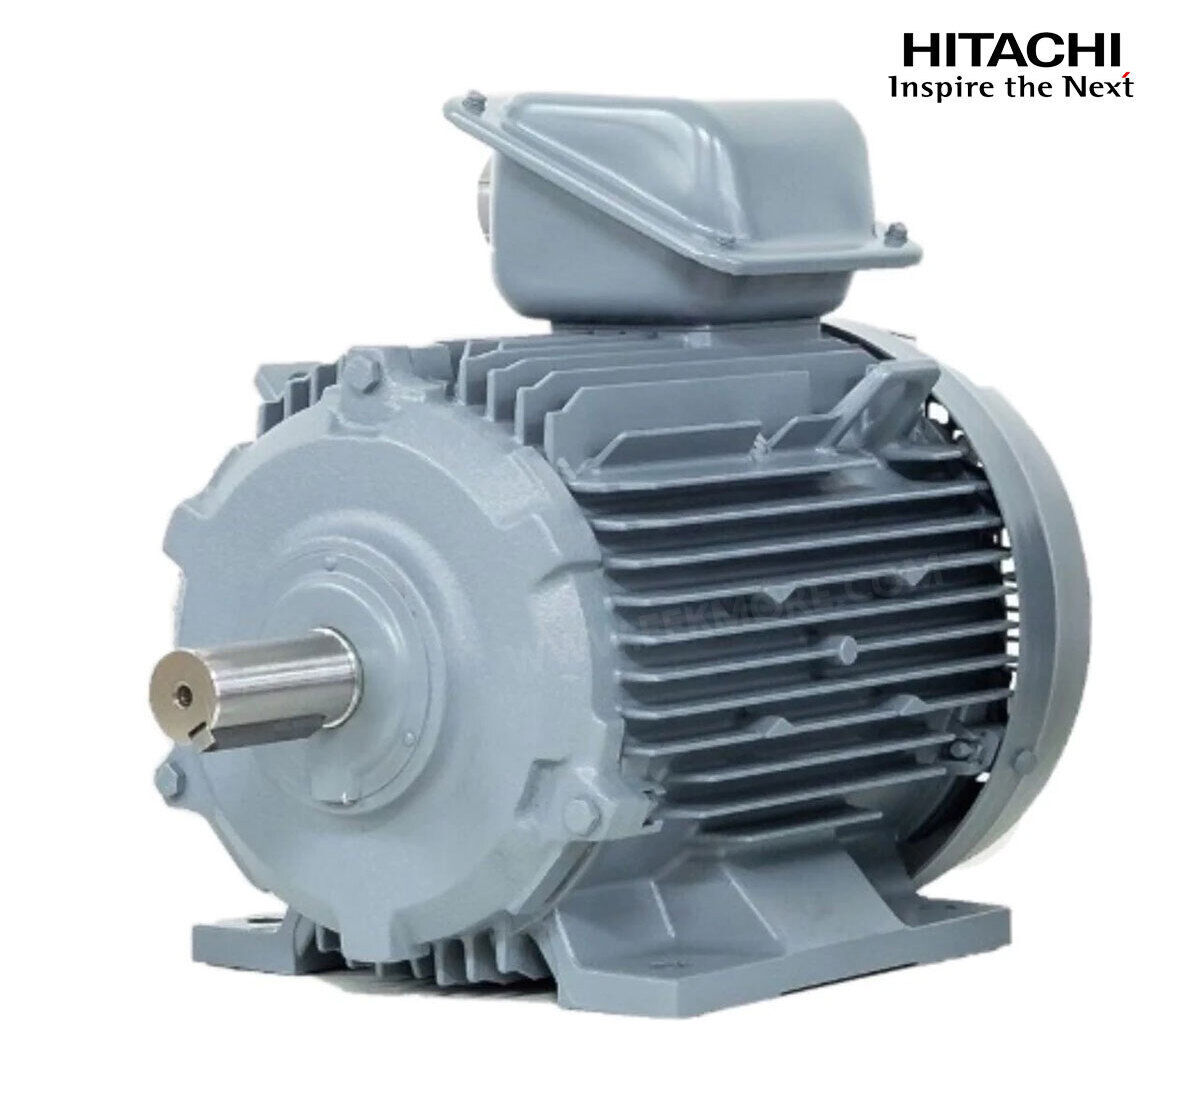 มอเตอร์ฮิตาชิของแท้ 100% HITACHI รุ่น TFO-K กำลัง 5 แรงม้า (3.7 KW.) กำลังไฟฟ้าที่ใช้ 380V ความเร็วรอบตัวเปล่า 1450 RPM แกนเพลามอเตอร์ 28 MM.รับประกัน 3 ปี มีของพร้อมจัดส่งทุกวัน